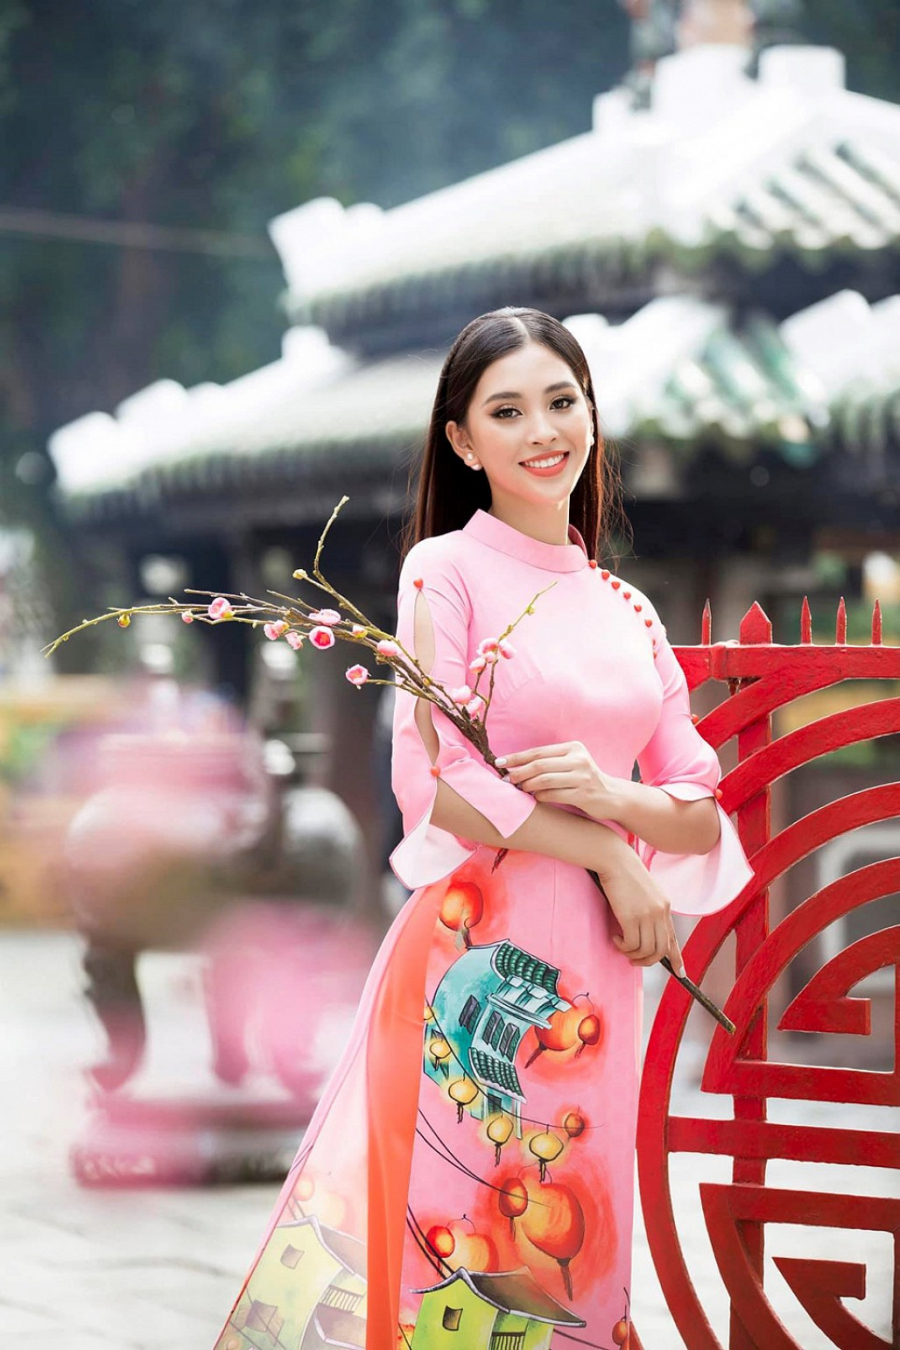 Hoa hậu Tiểu Vy thực hiện bộ ảnh áo dài Tết với những họa tiết của quê nhà Hội An: đèn lồng, phố cổ và những vách mái ngói, cành đào, cành mai. Bộ áo dài có phong cách truyền thống, kết hợp với lối trang điểm truyền thống.    